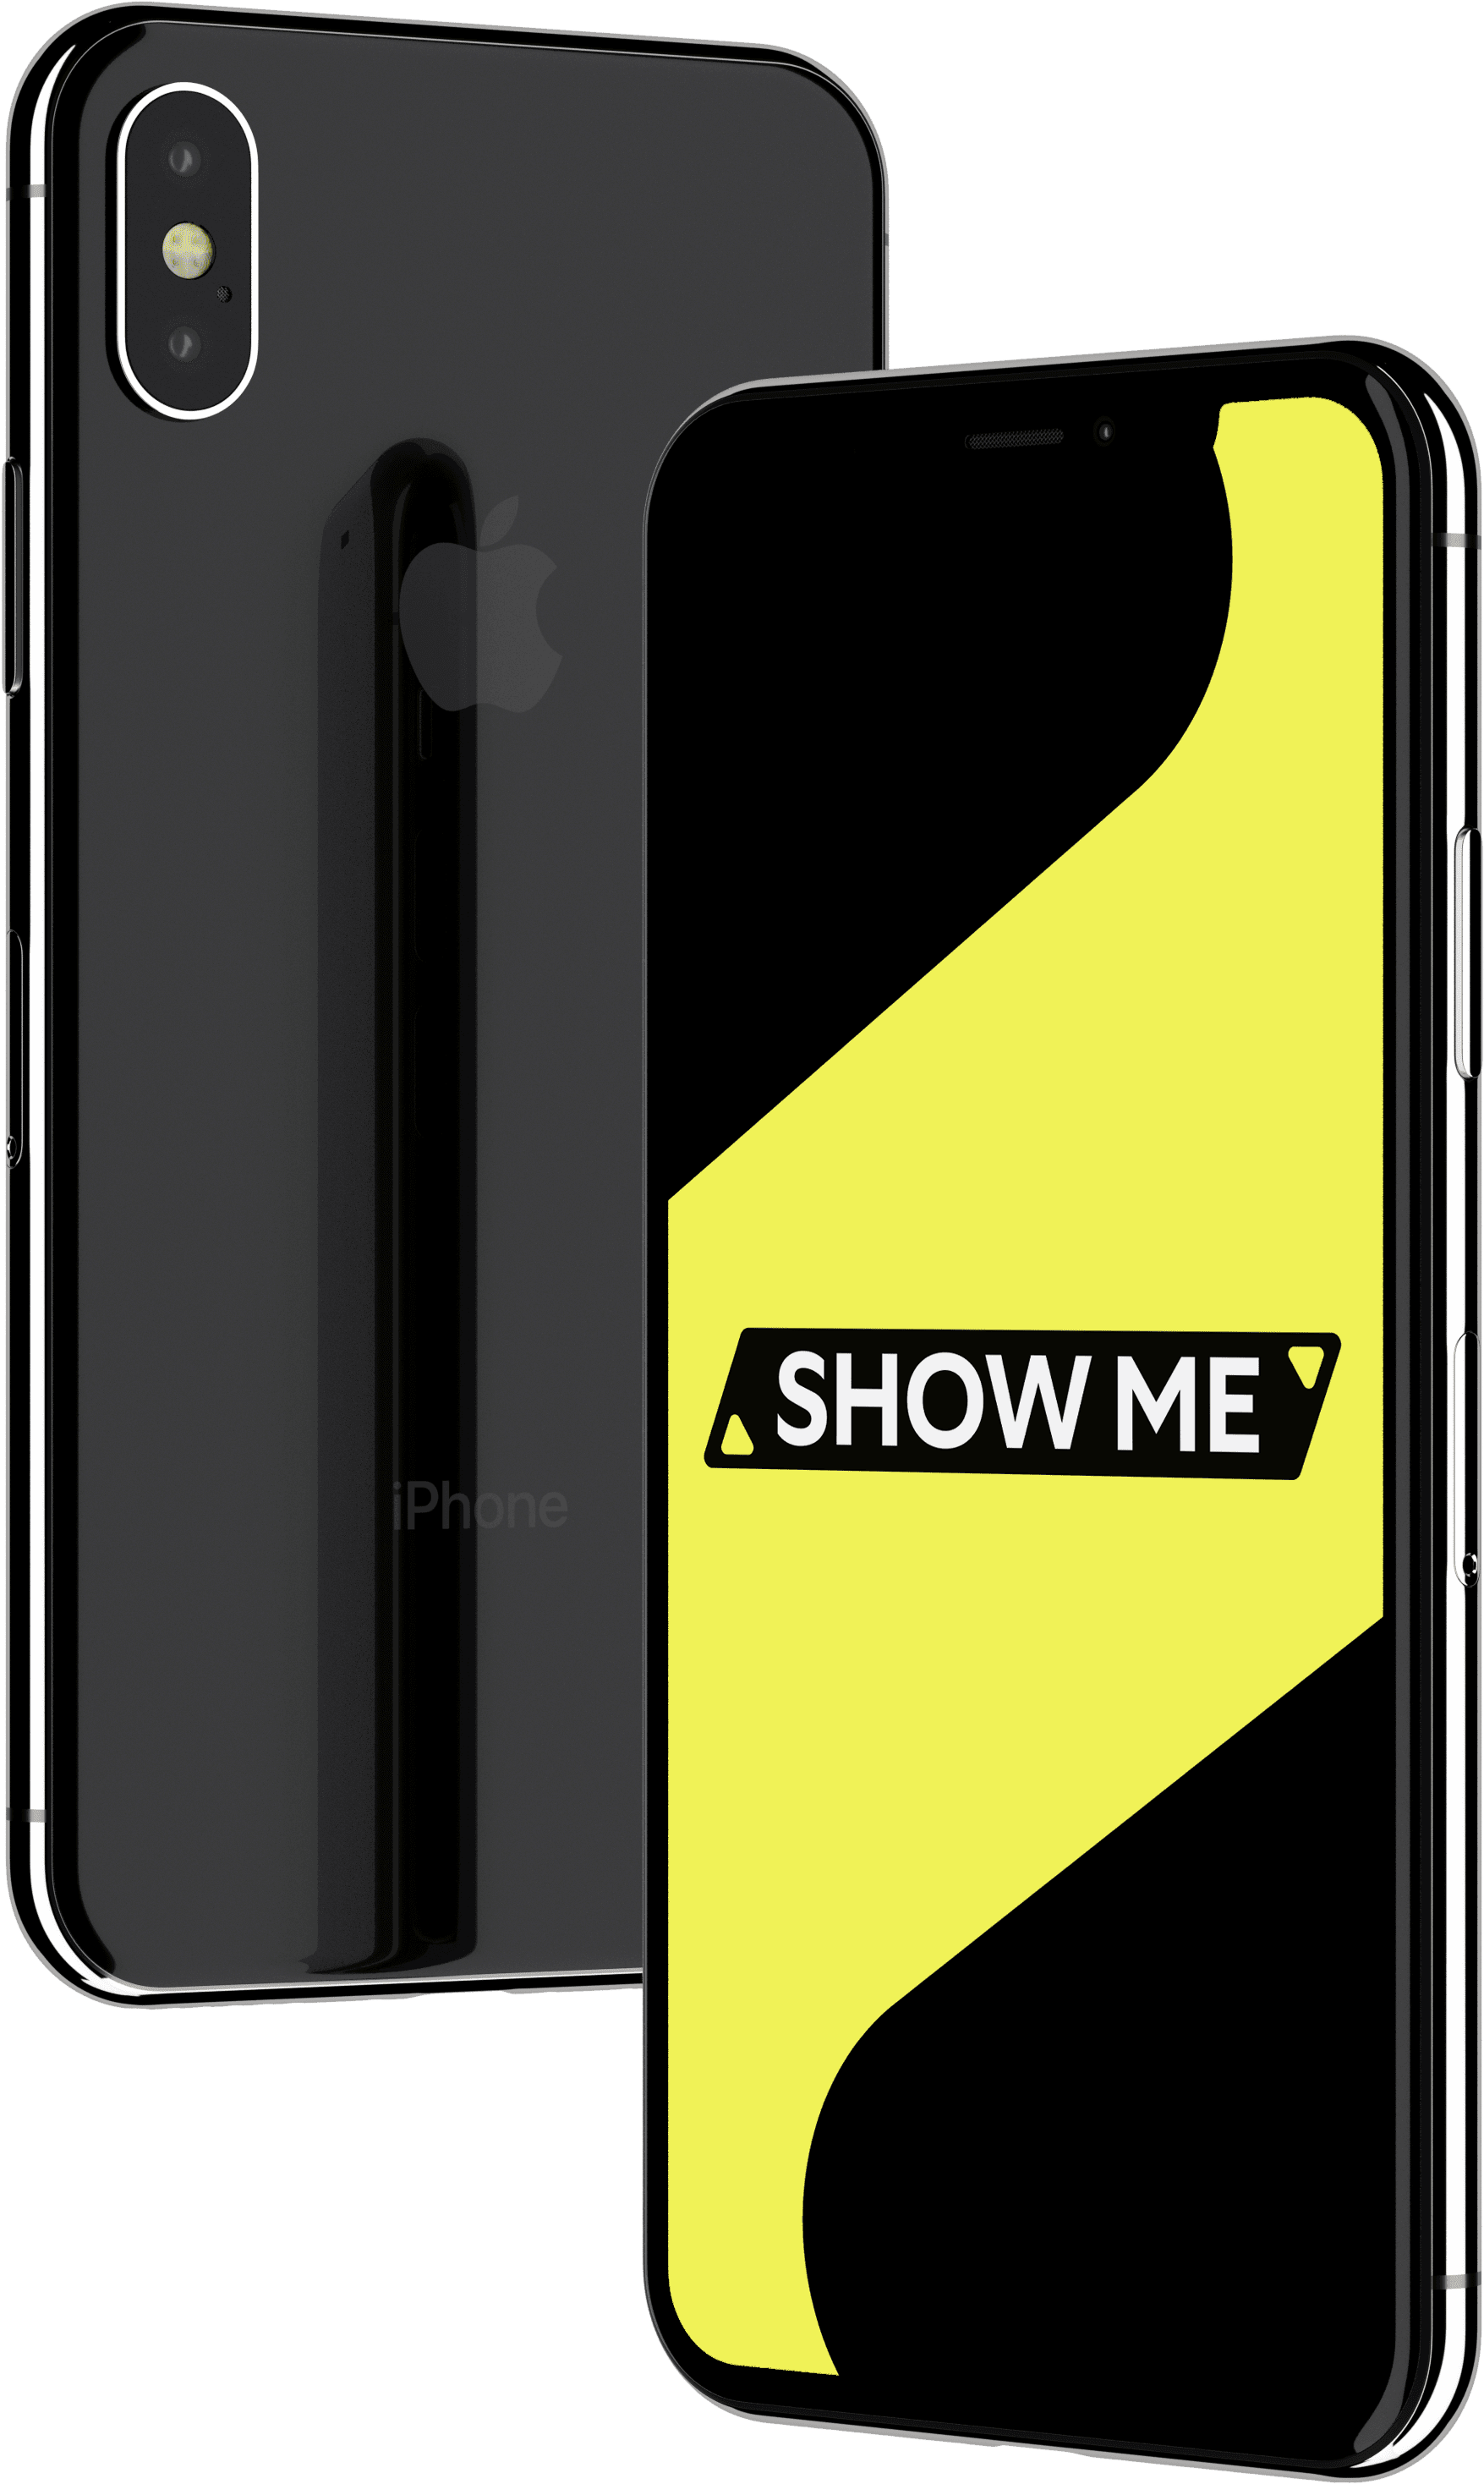 ShowMe refurbished iPhone mockup